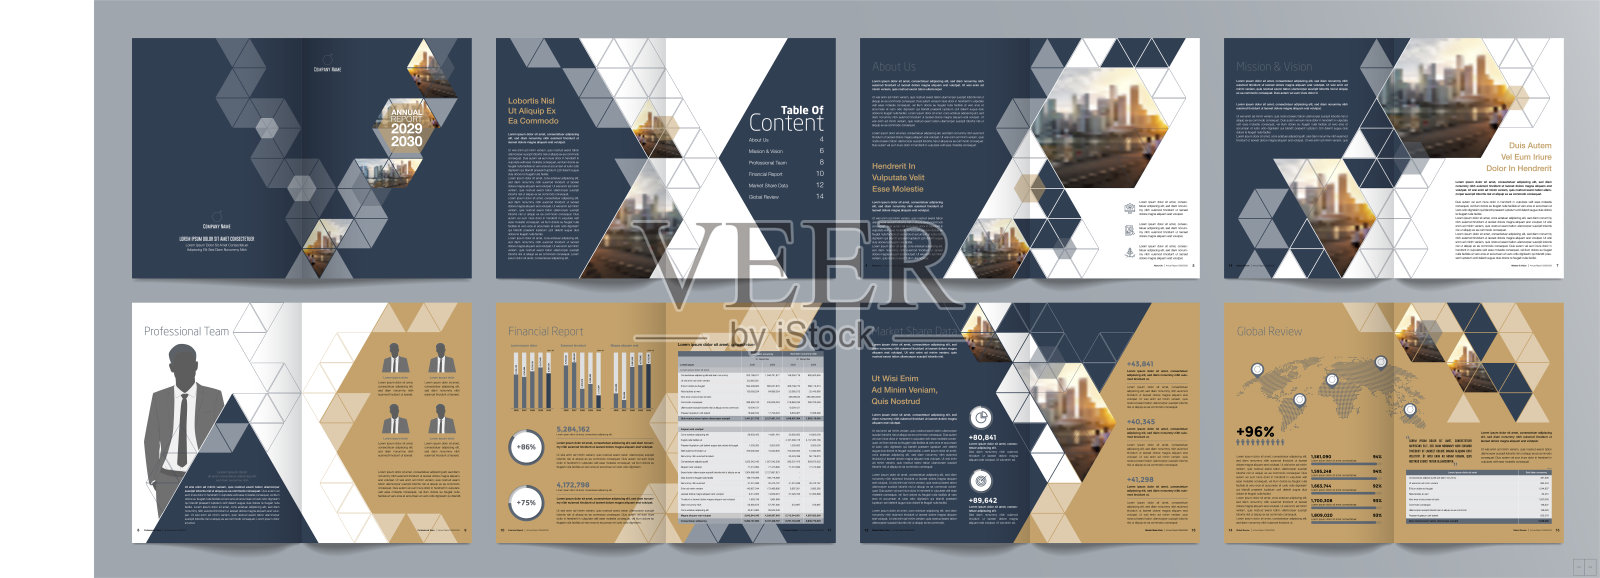 公司商业展示指南手册模板，年度报告，16页极简平面几何商业手册设计模板，A4大小。设计模板素材